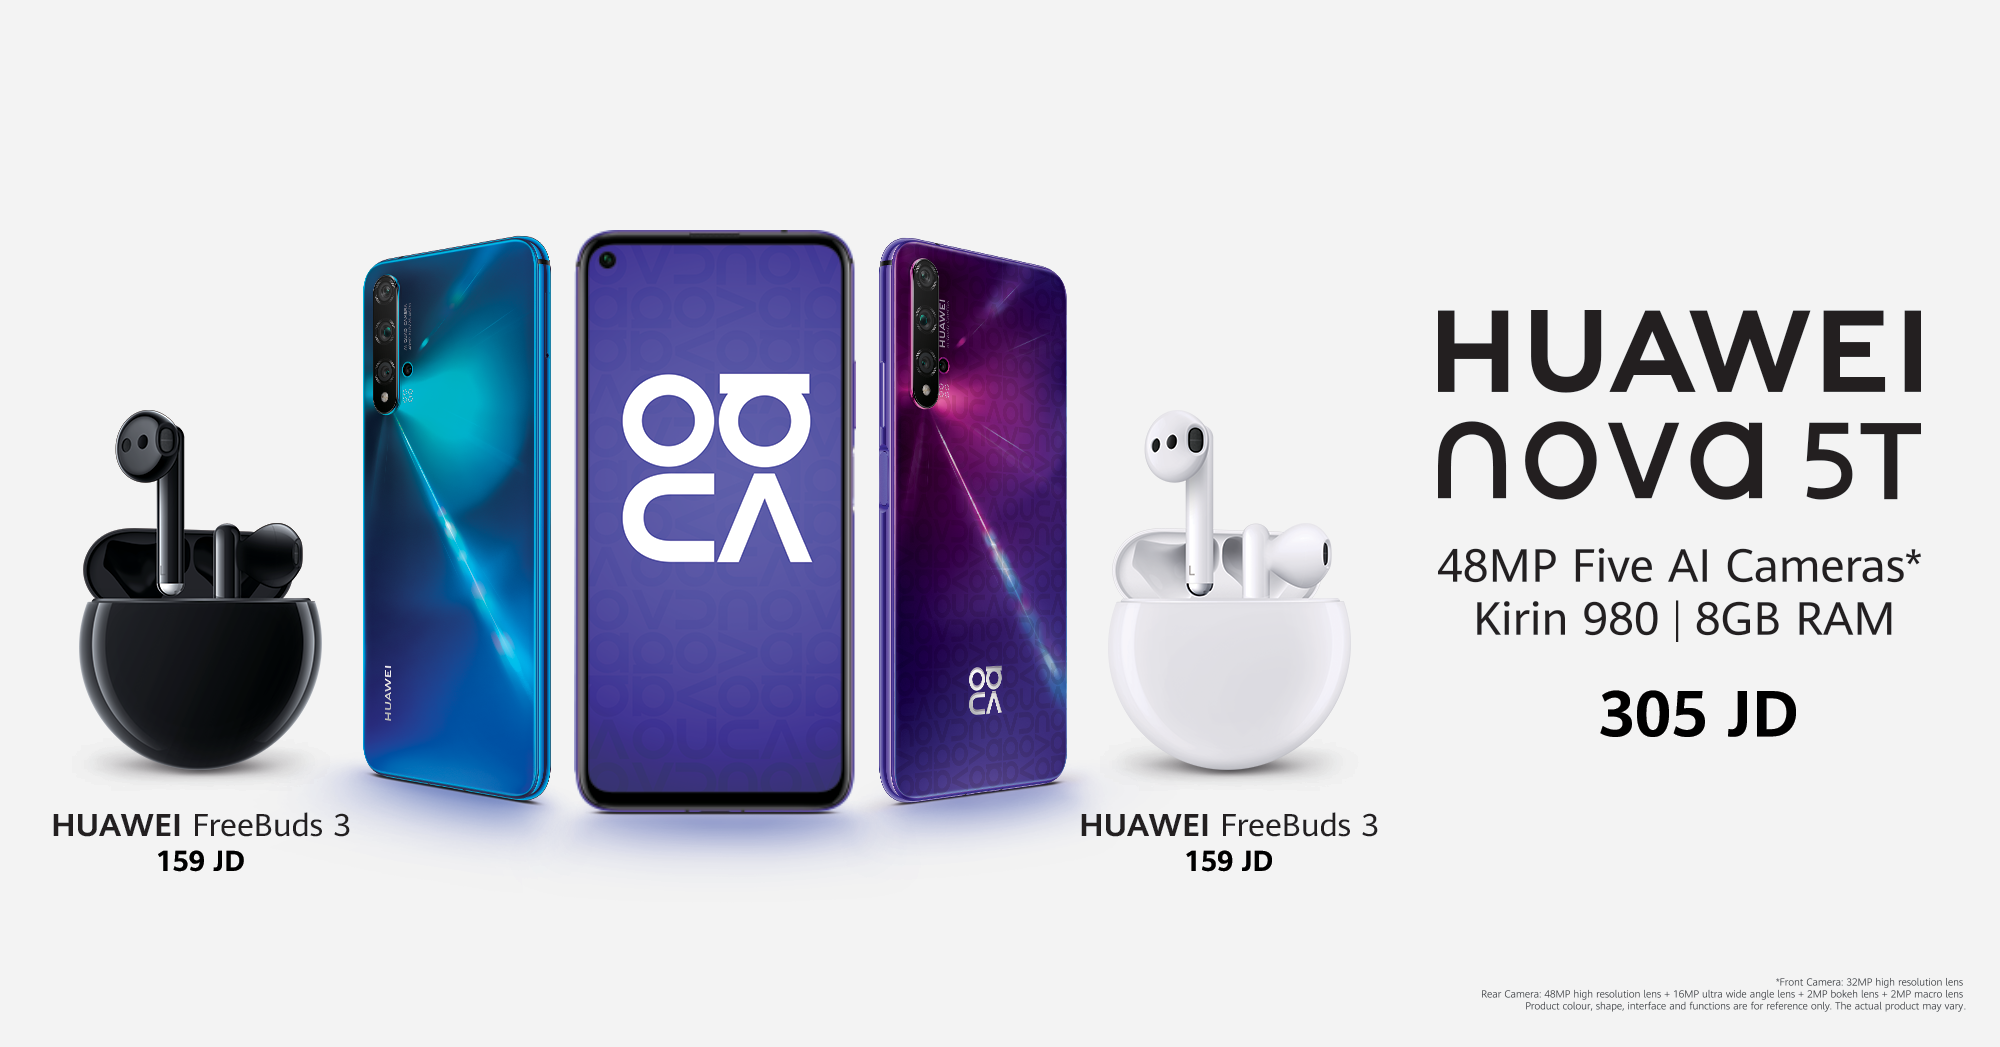 بعد طول انتظار.. هاتف Huawei nova 5T الرائع وسماعة Freebuds 3 المدهشة الآن  في السوق الأردني - جريدة الغد